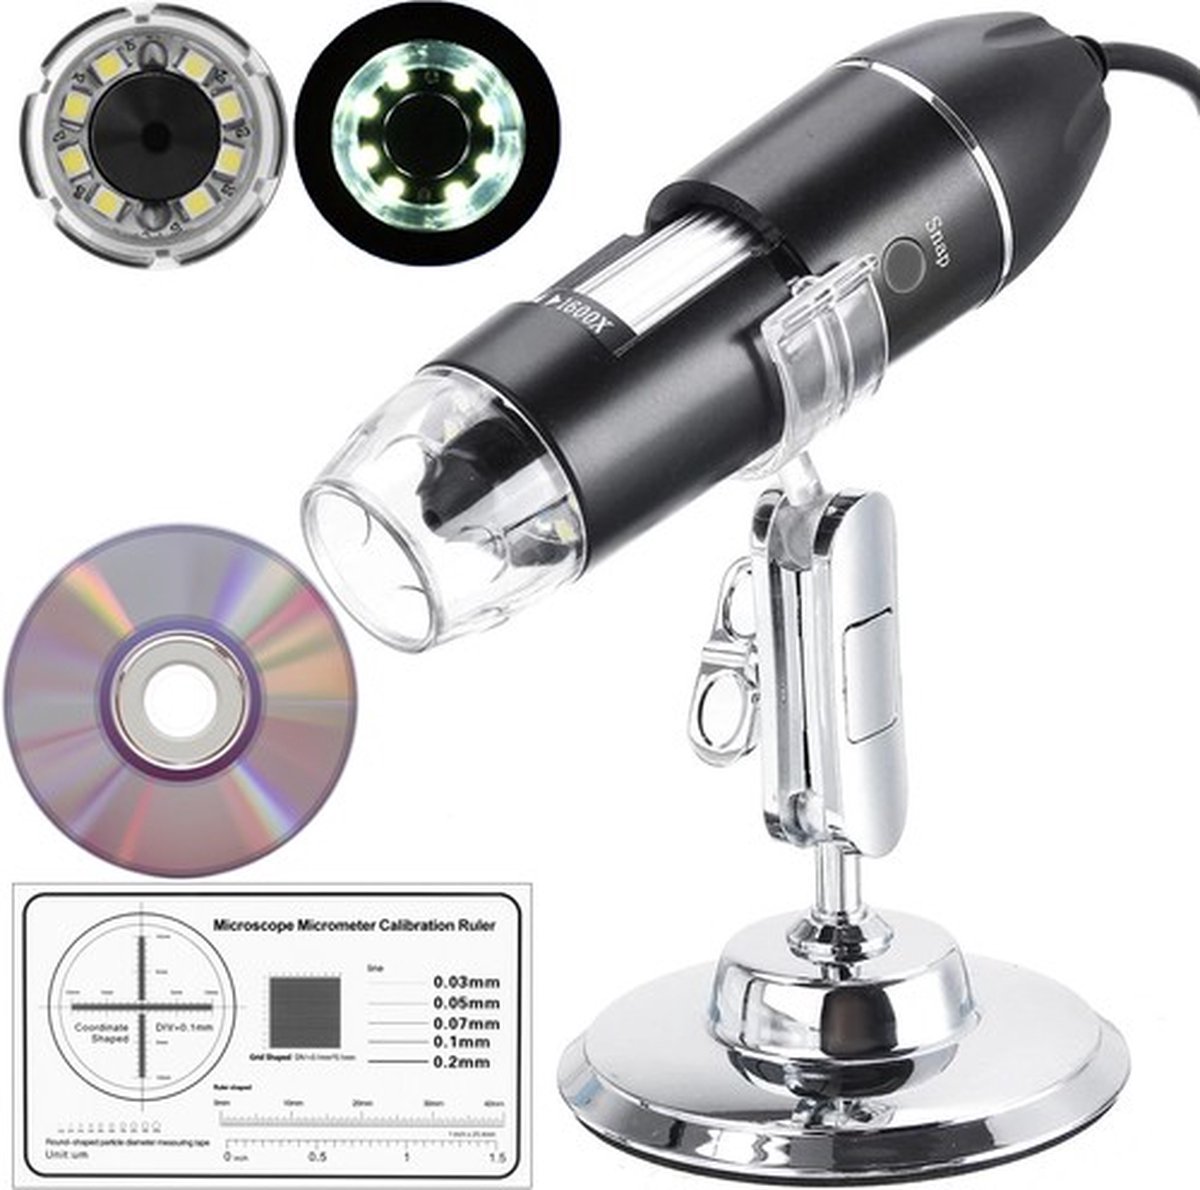 Digitale Microscoop met Camera - 1600x Zoom - Microscopie - Endoscoop - Foto & Video - USB connectie